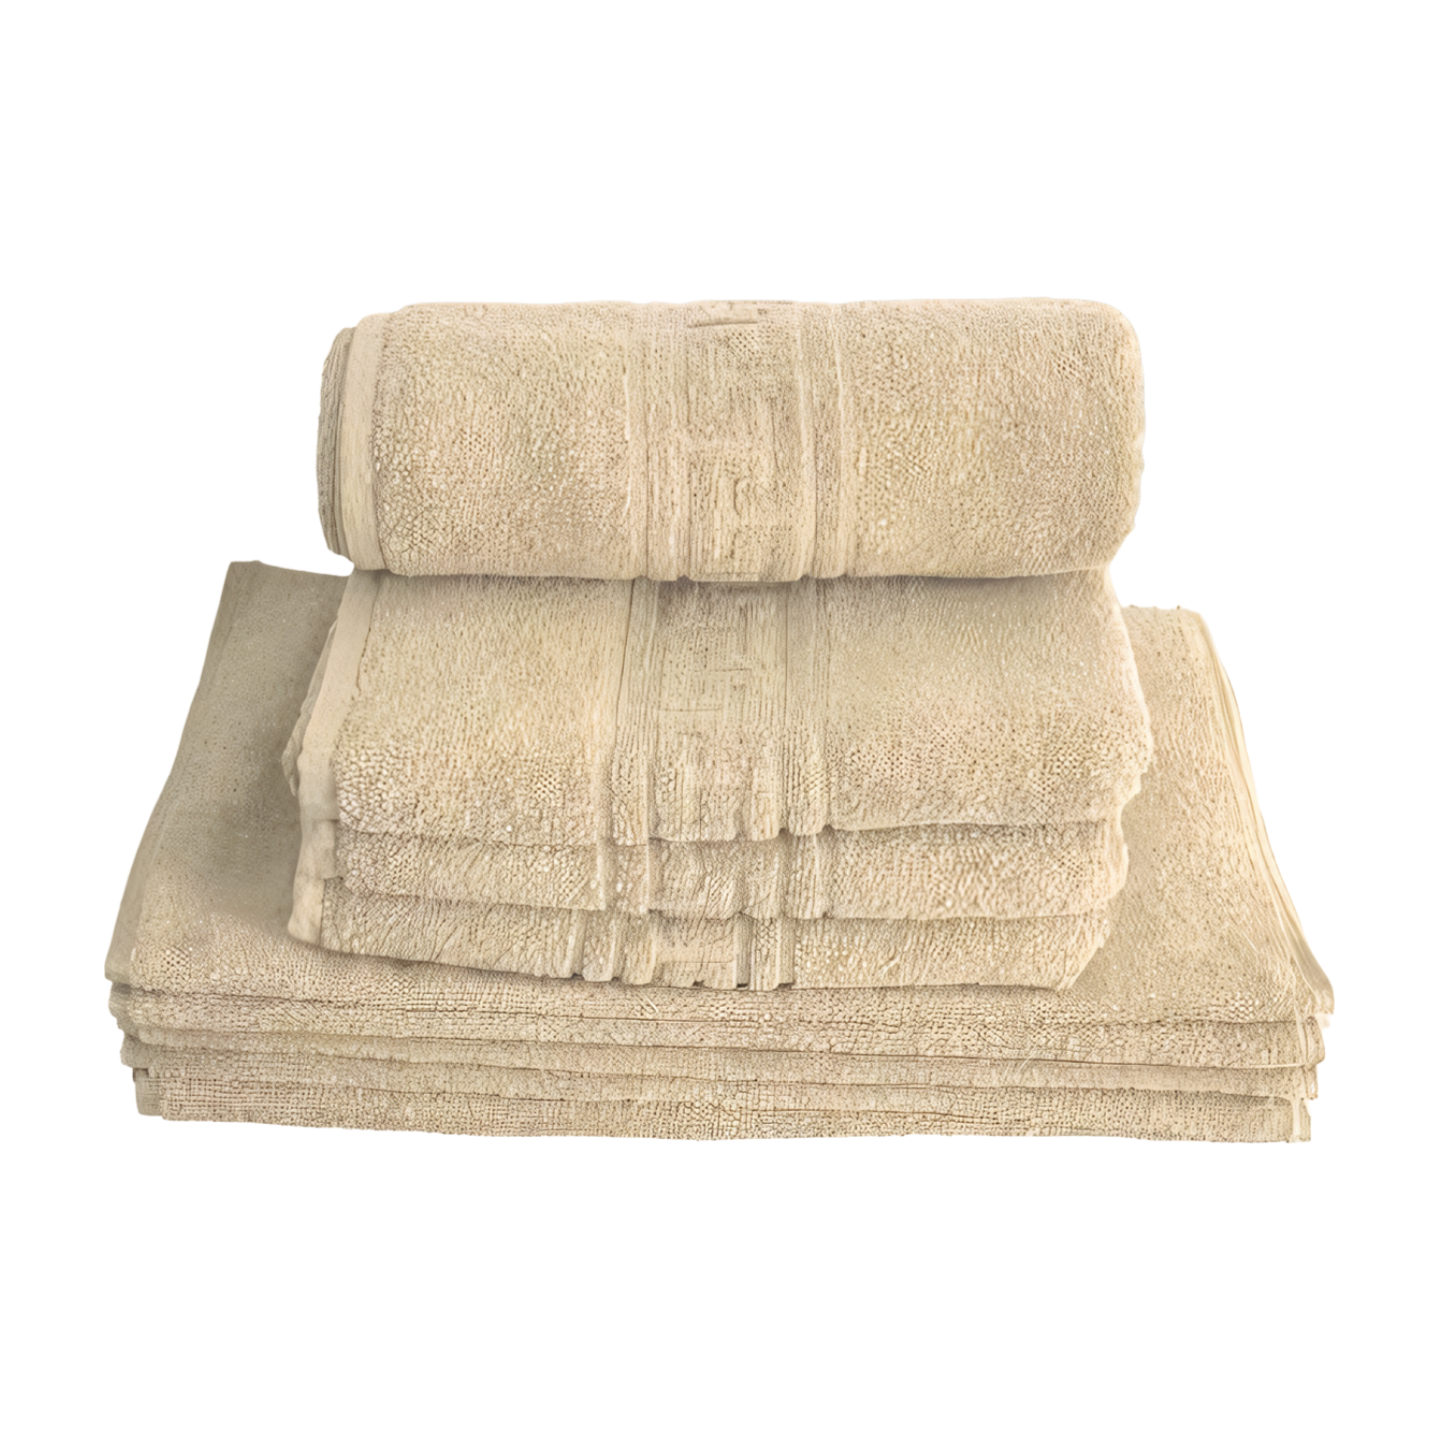 2 σετ πετσέτες Βαμβάκι 100%, Μοντέλο Ελλάδα CREM 70 cm x 140 cm 50 cm x 90 cm